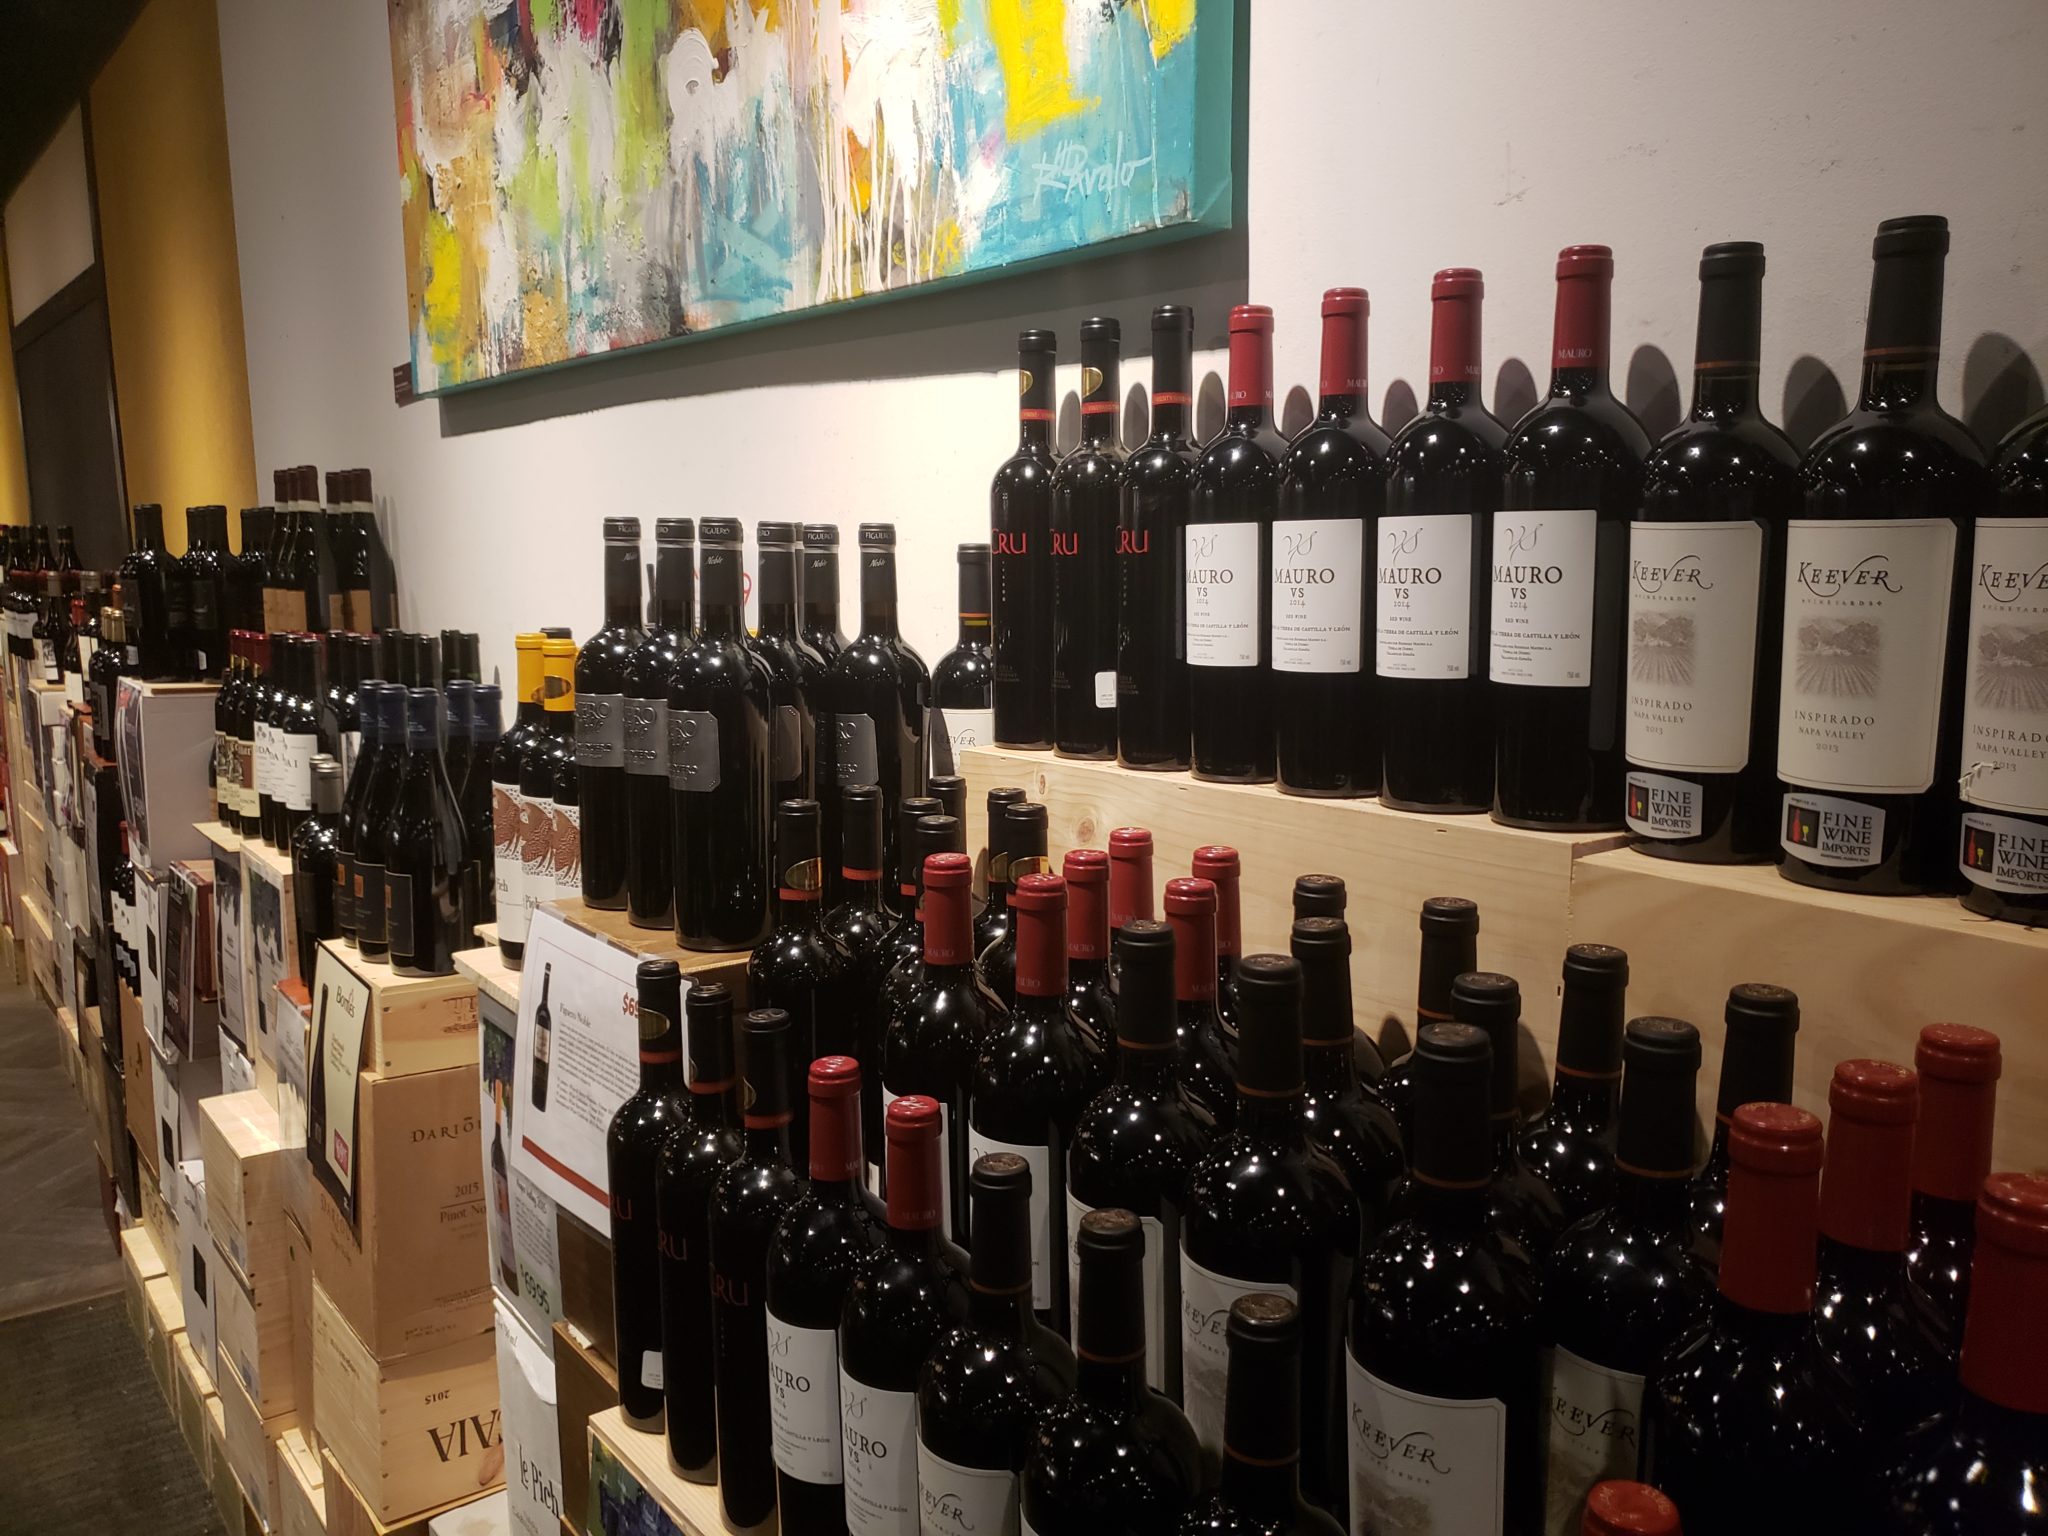 a shelf of wine bottles